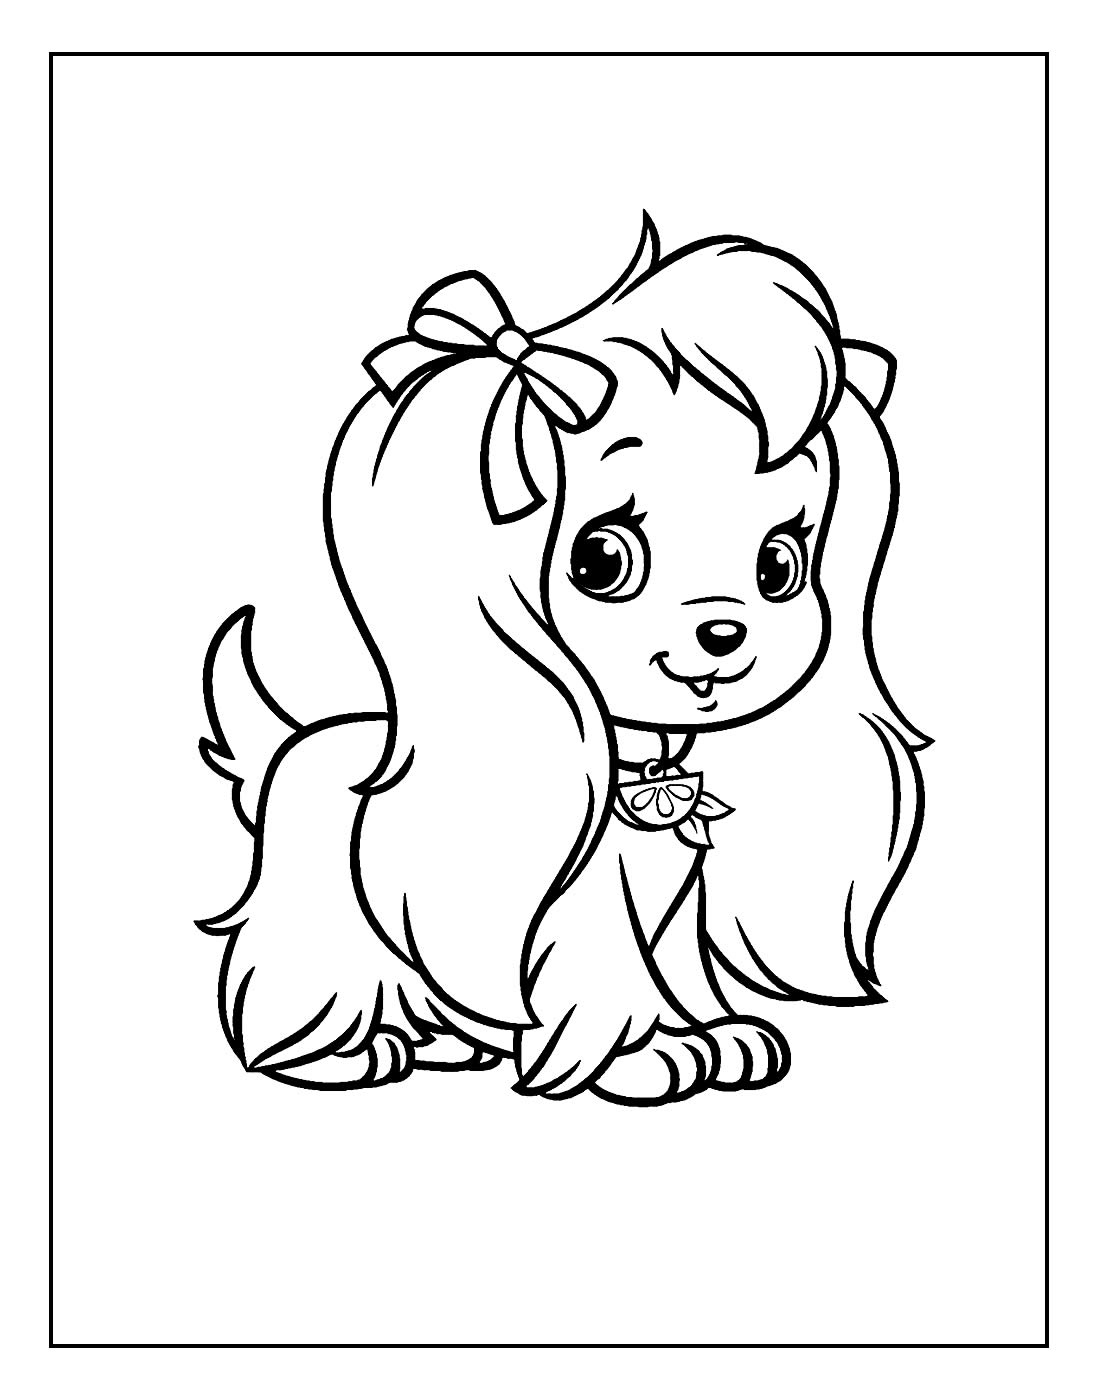 Desenhei o cachorro da moranguinho #moranguinho #desenhar #colorir #ca